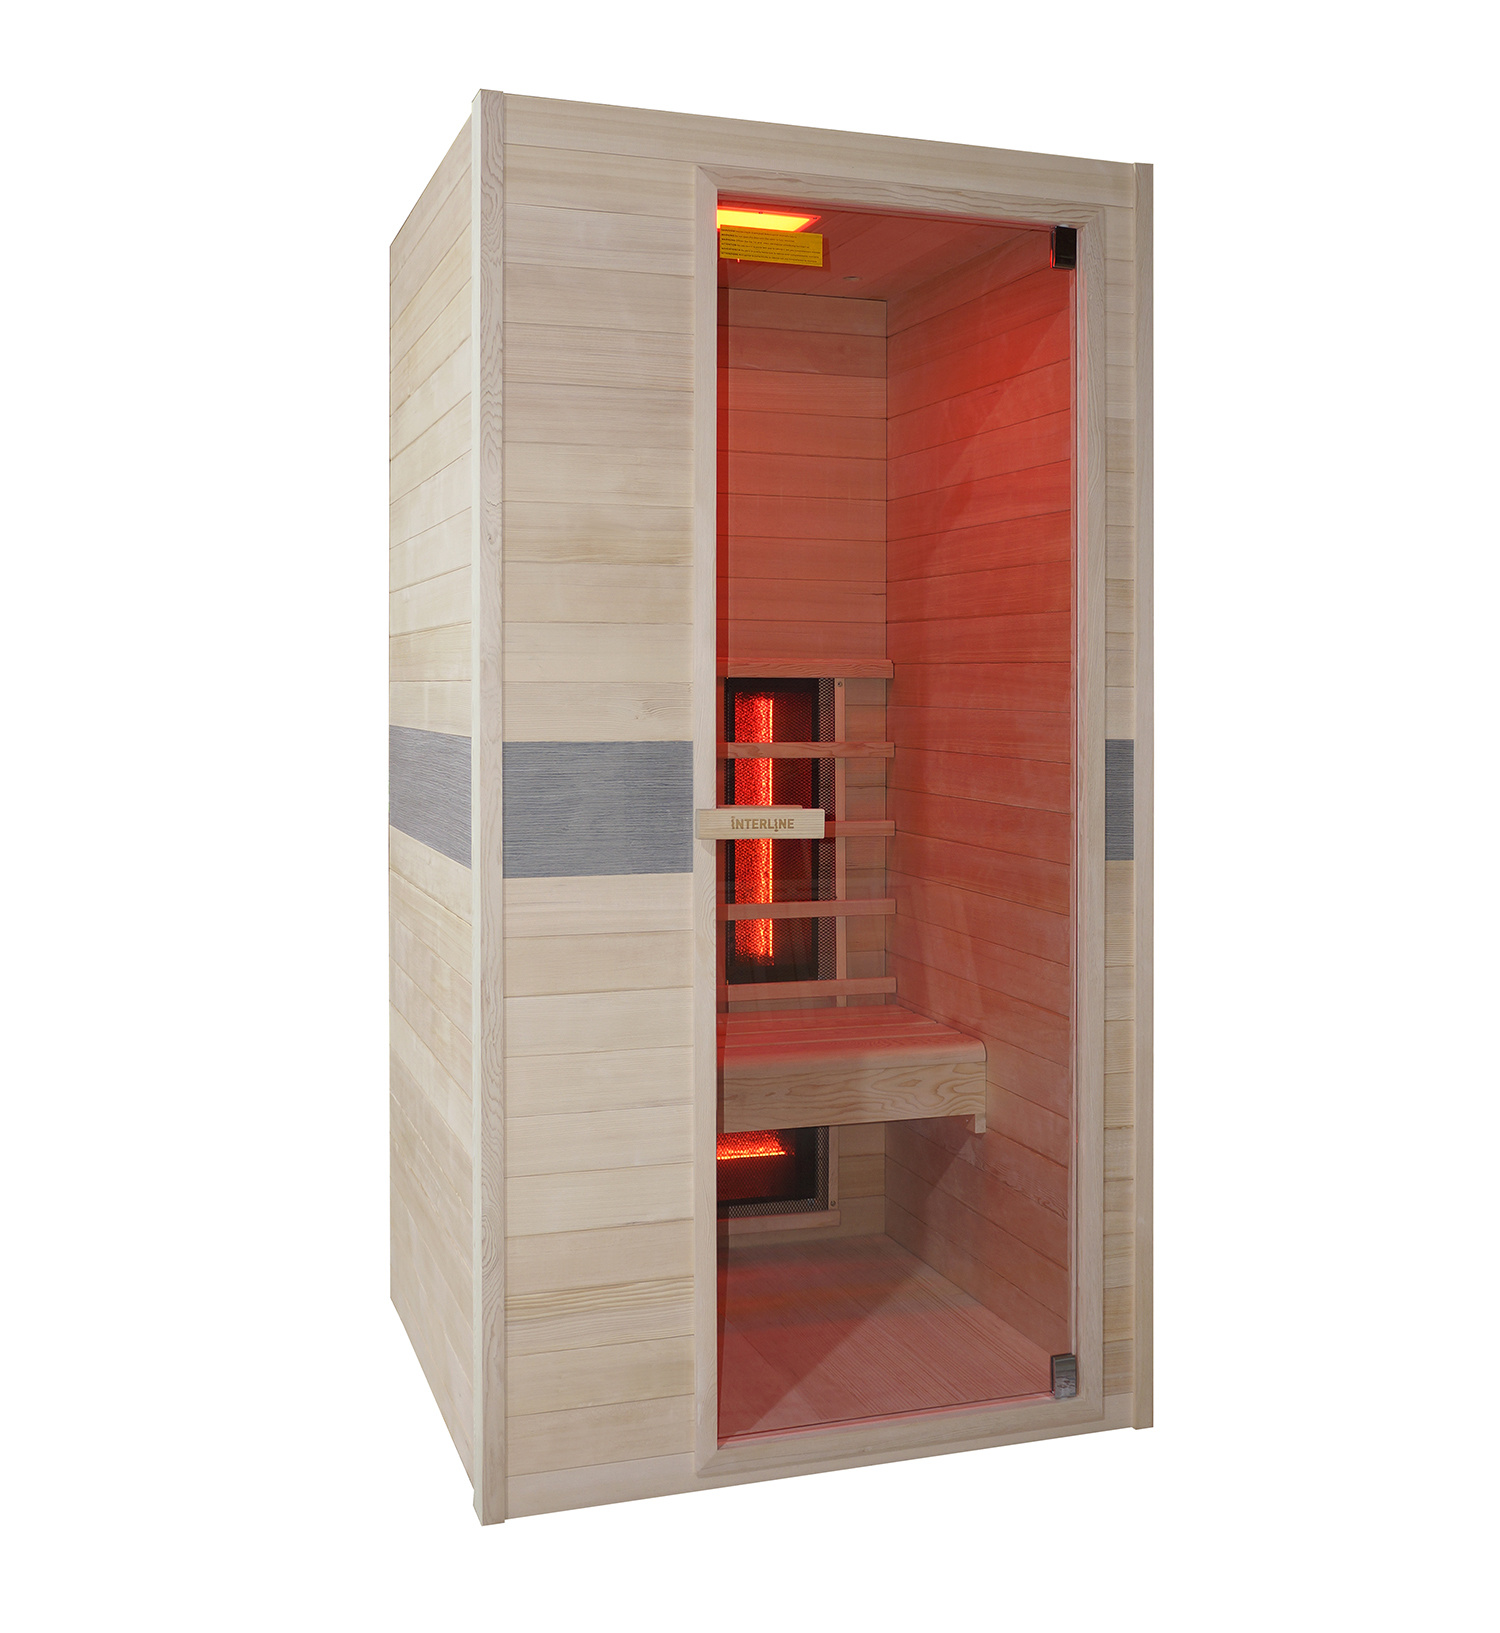 Eerste ik heb nodig Overweldigen Interline 1 persoons infrarood sauna kopen? | Zwembadstore.com